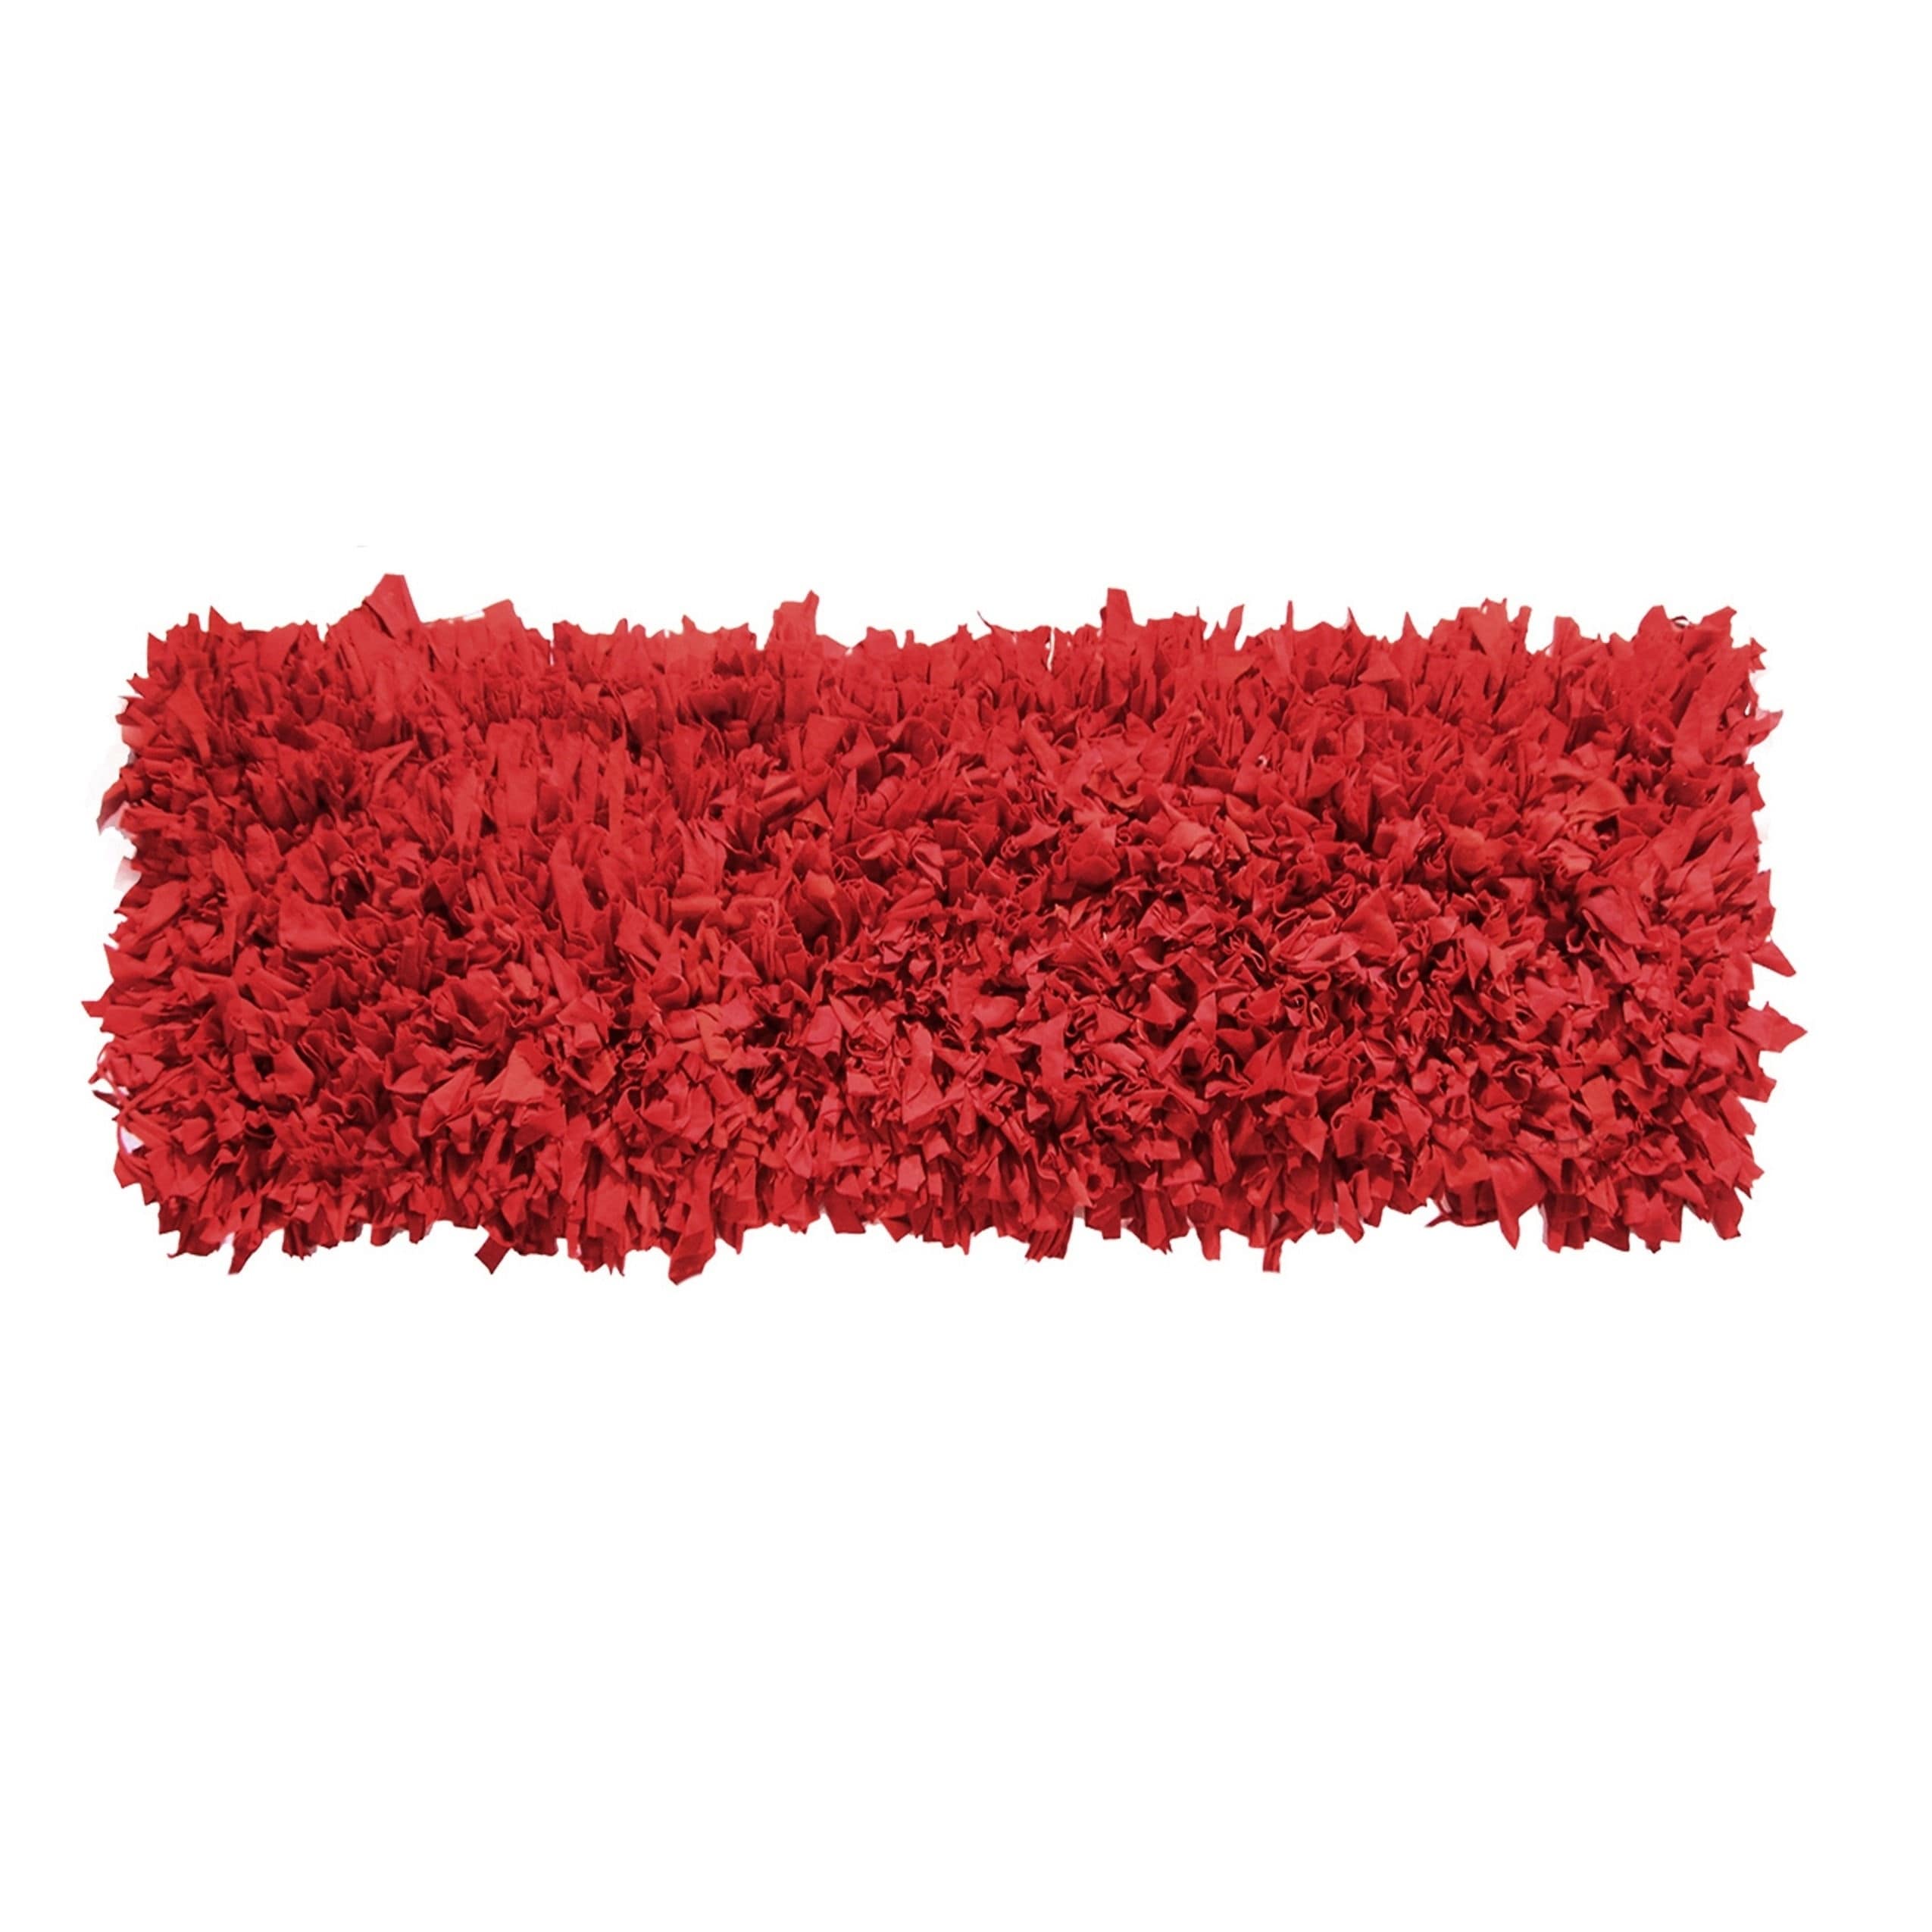 Hand woven Jersey Red Cotton Shag Runner Rug (2 X 6)